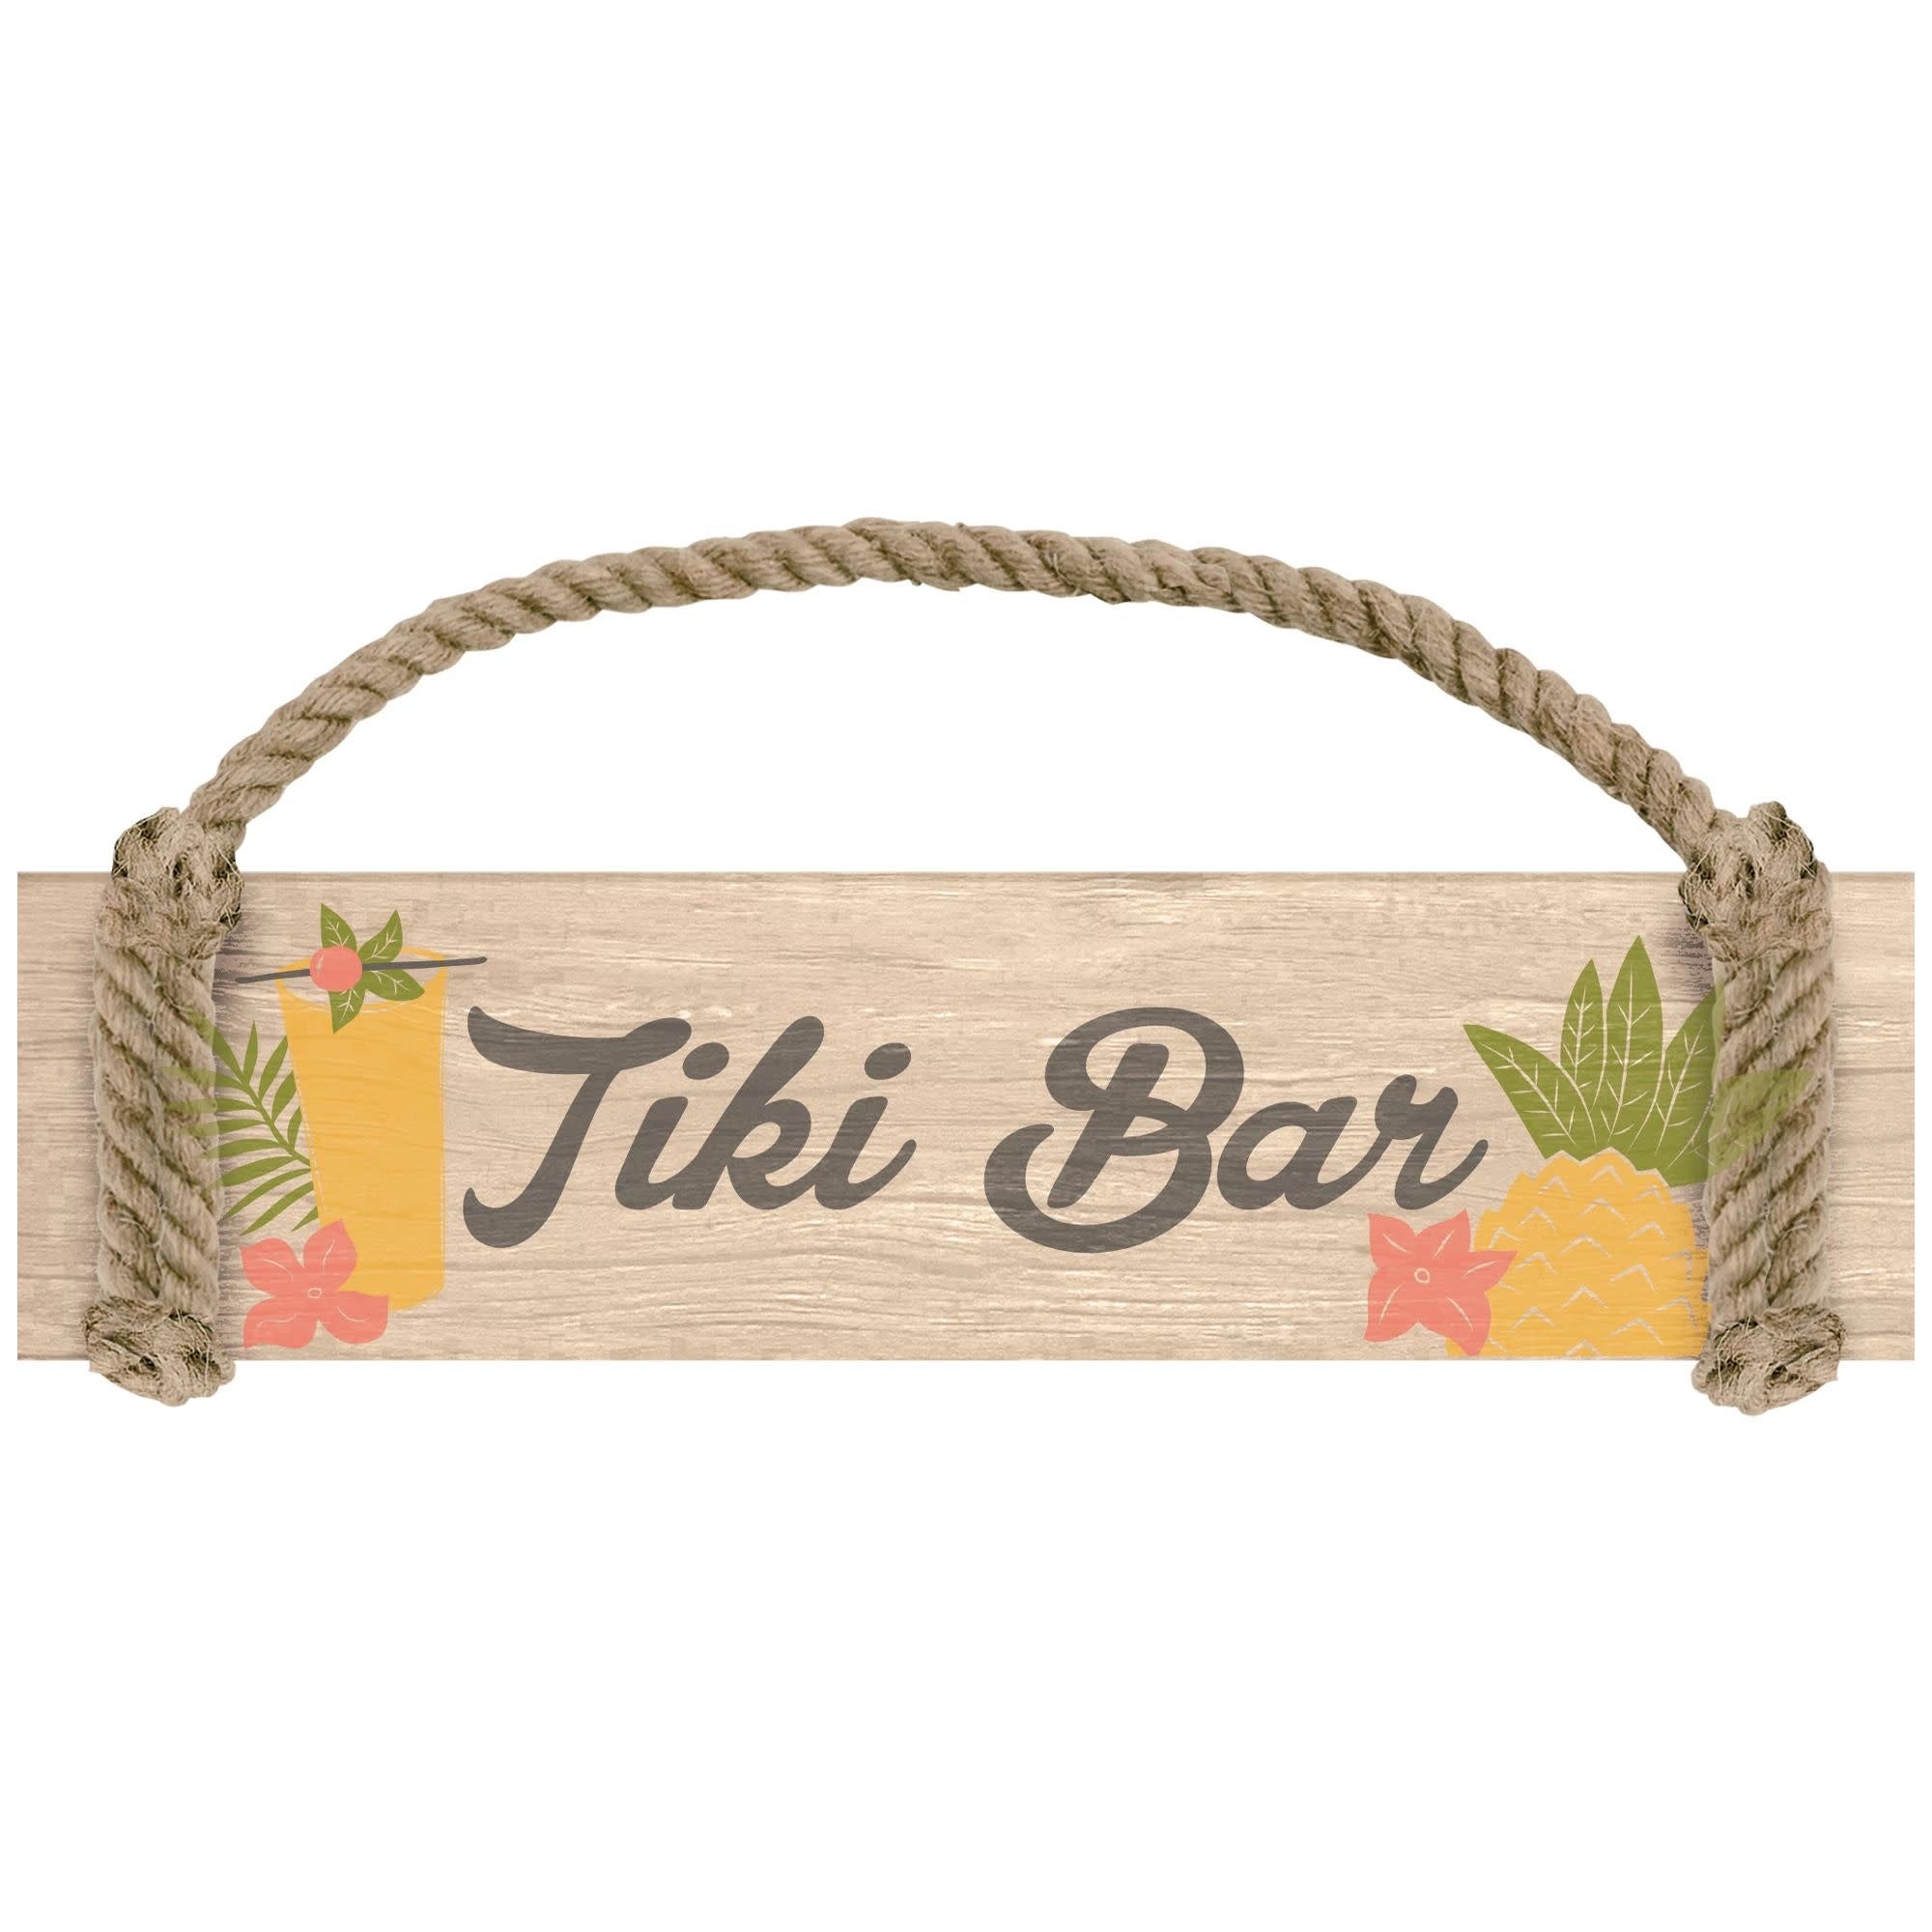 Panneau Suspendu - Tiki Bar Party Shop